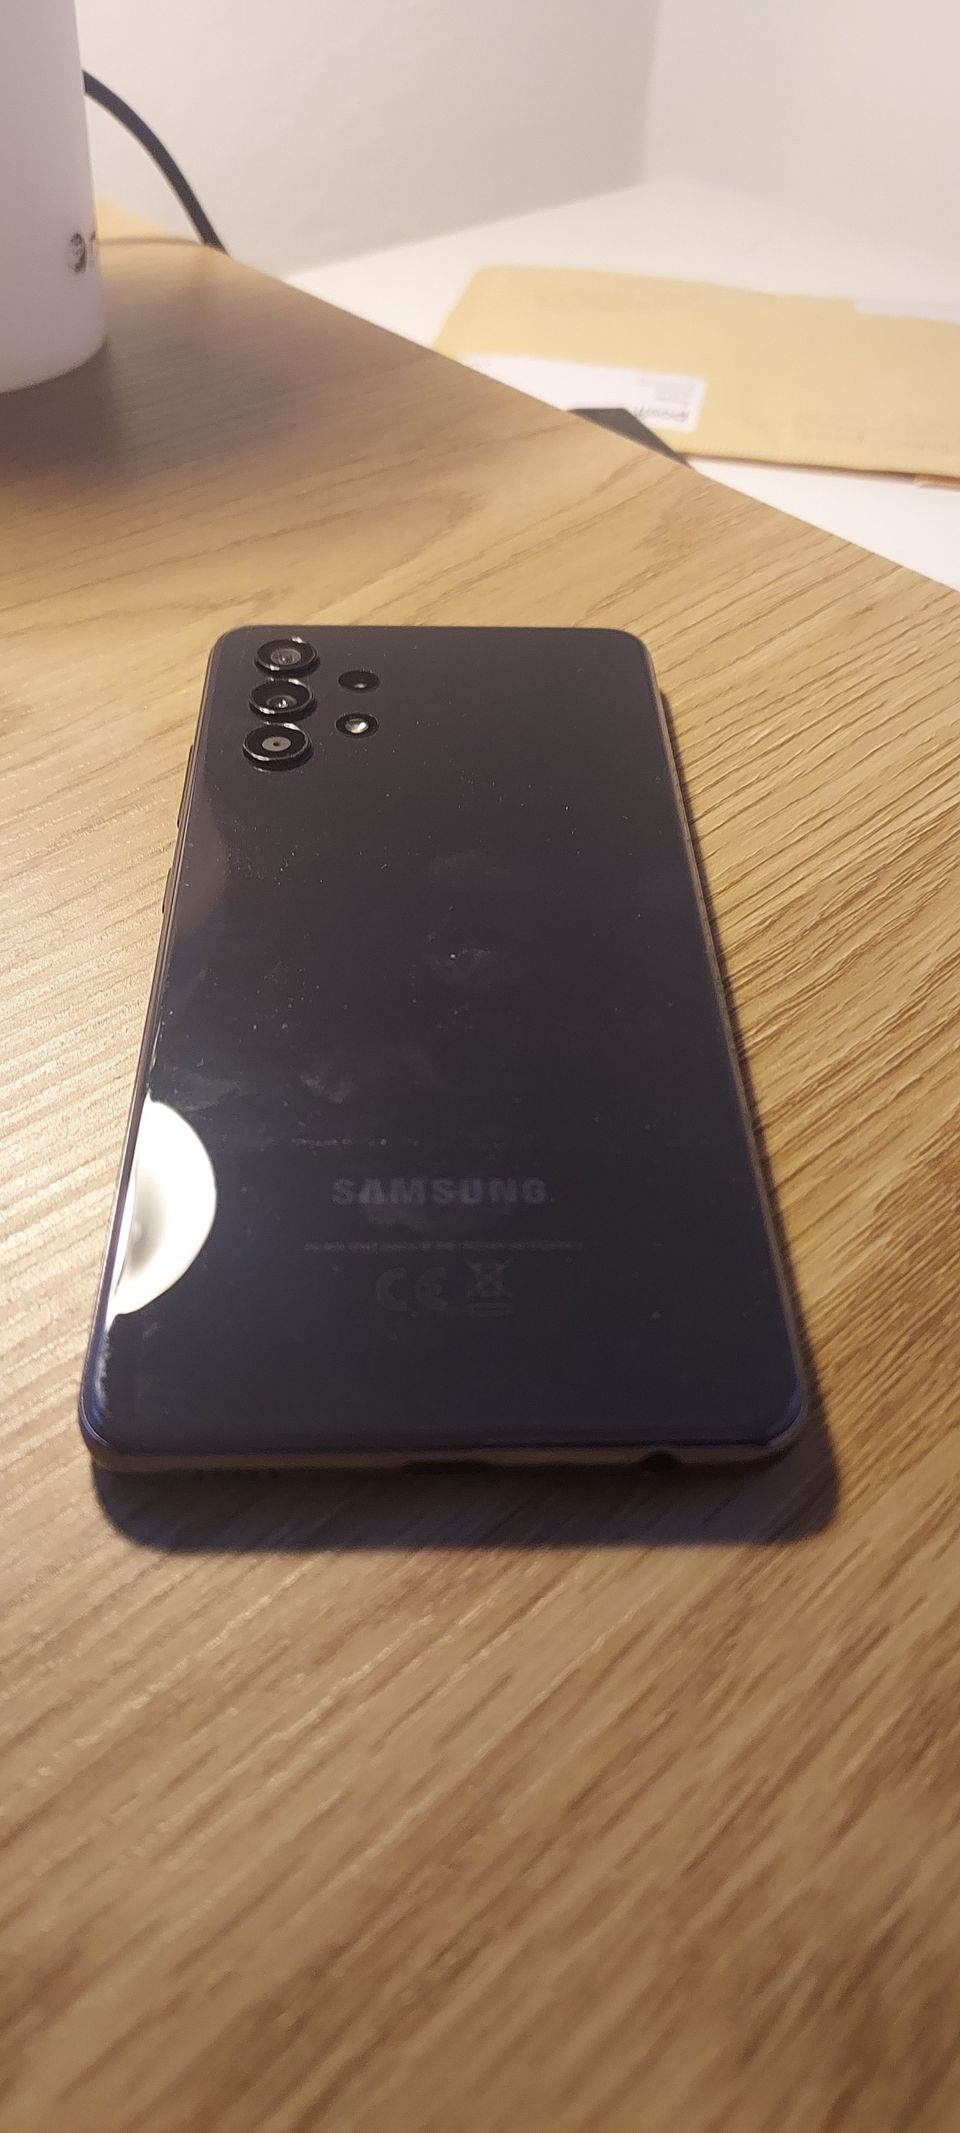 Samsung galaxy a32 128GB black 4g